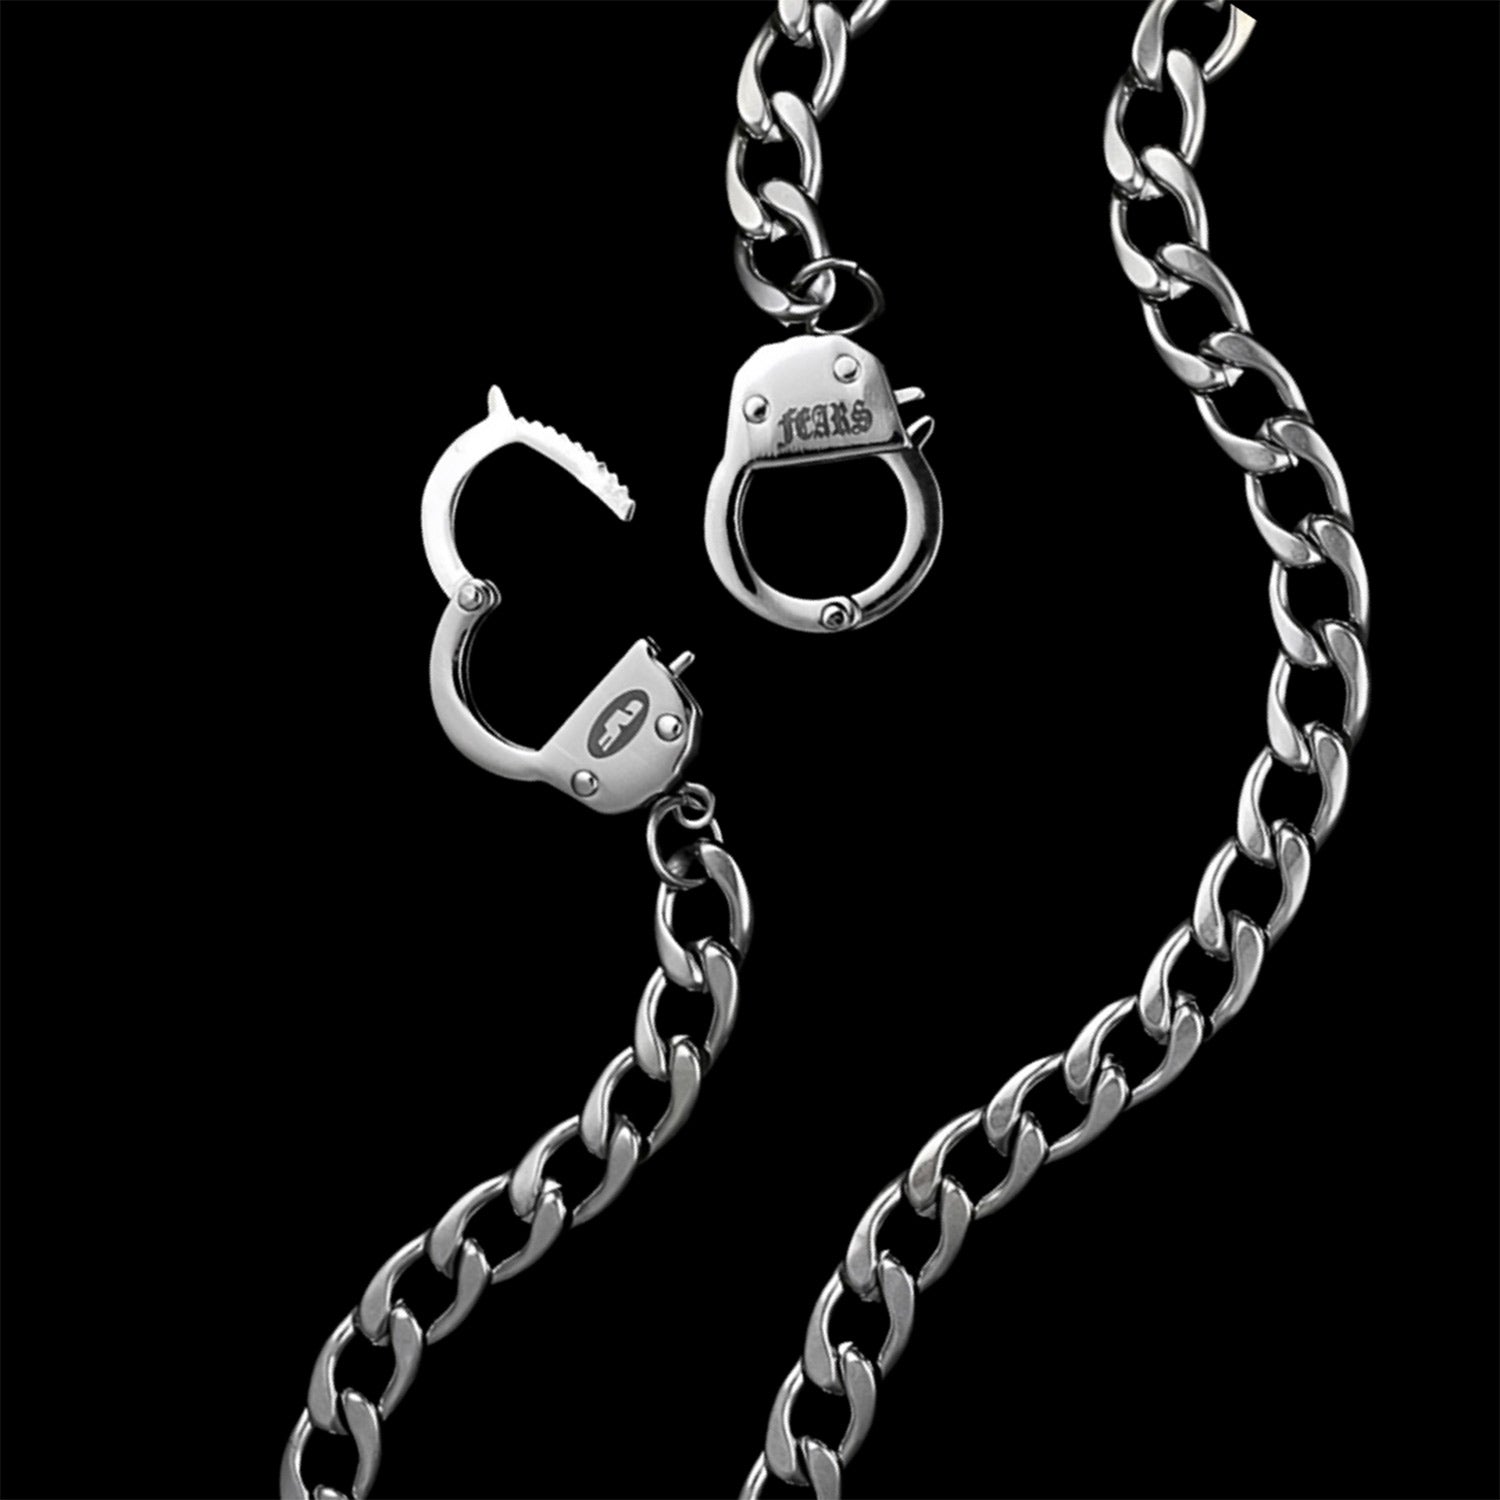 Handcuff Chain Necklace